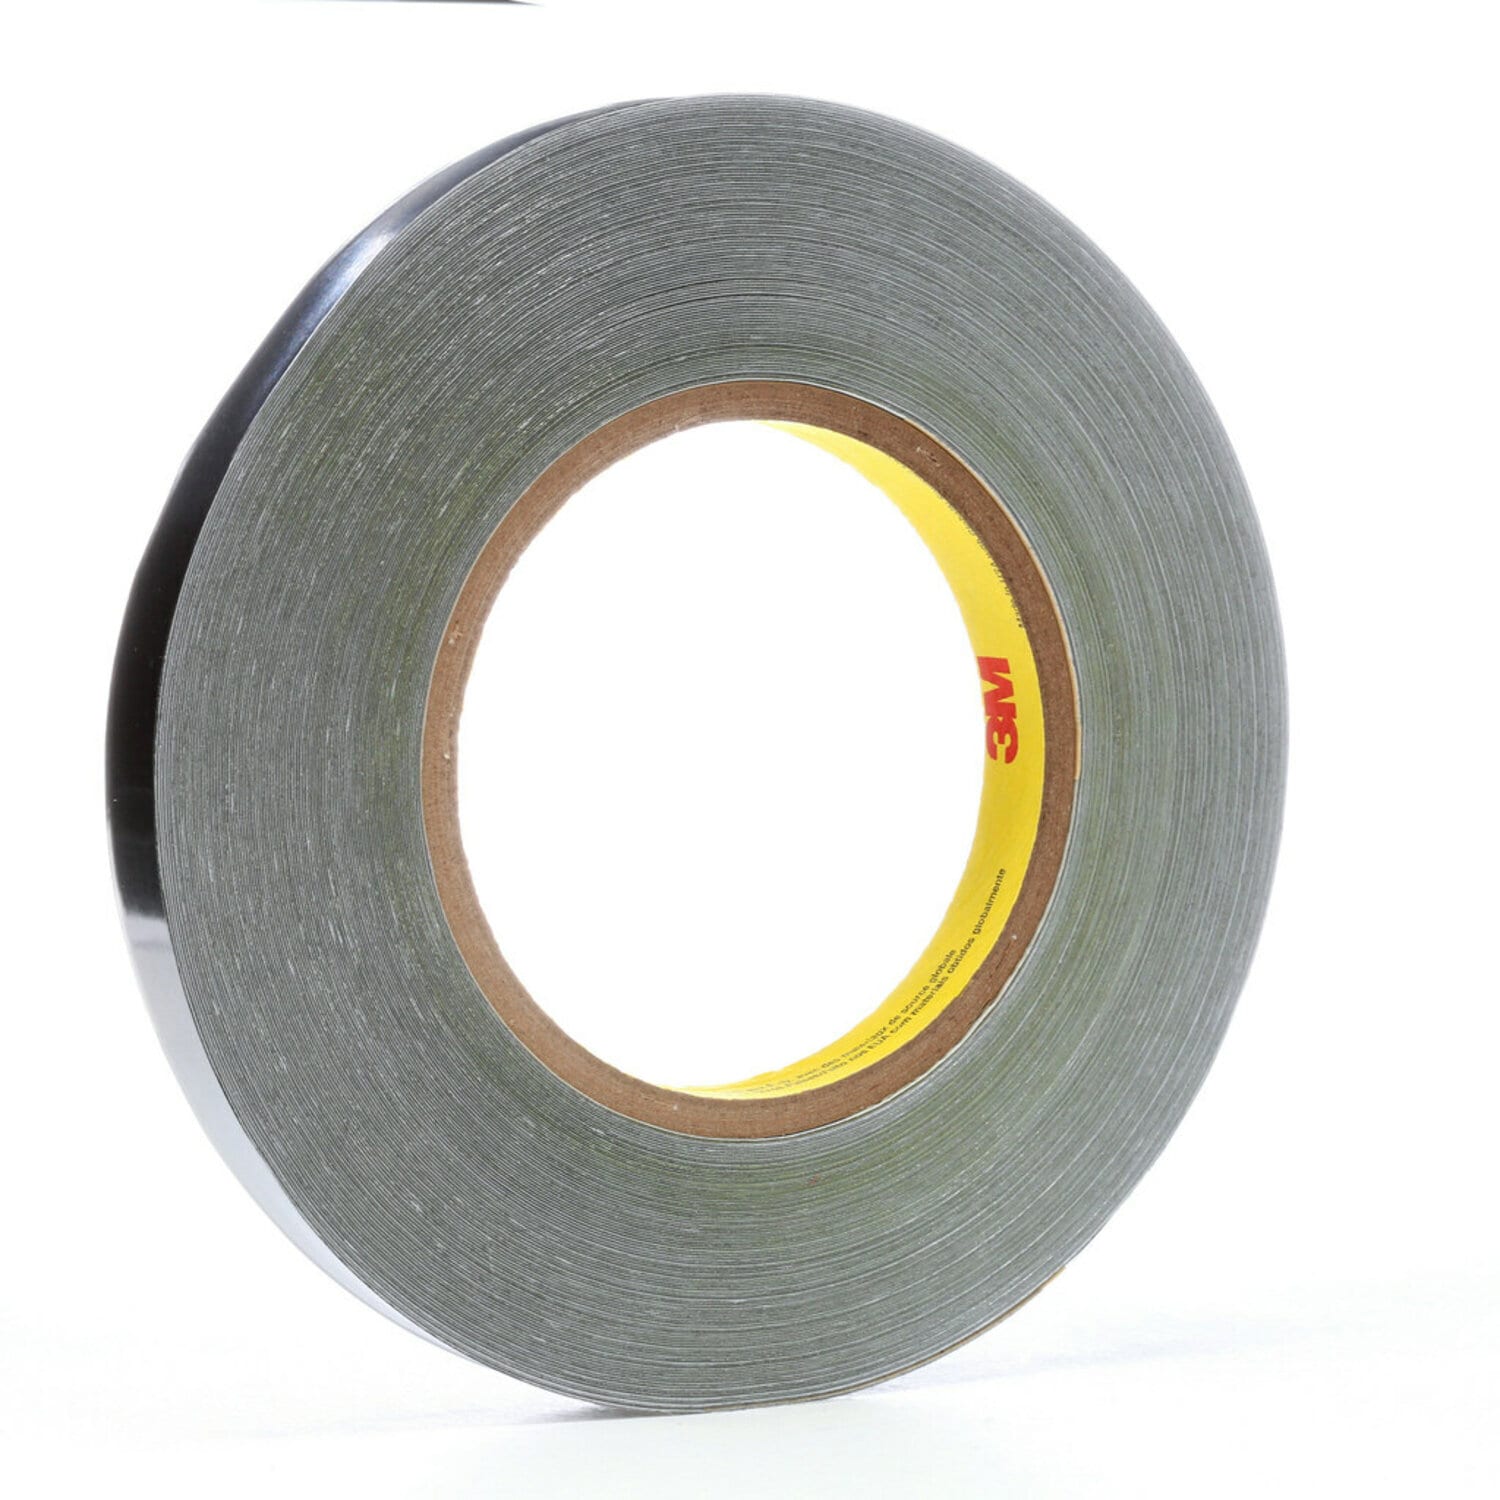 7100221138 - 3M Lead Foil Tape 420, Dark Silver, 3/8 in x 36 yd, 6.8 mil, 20 Rolls/Case